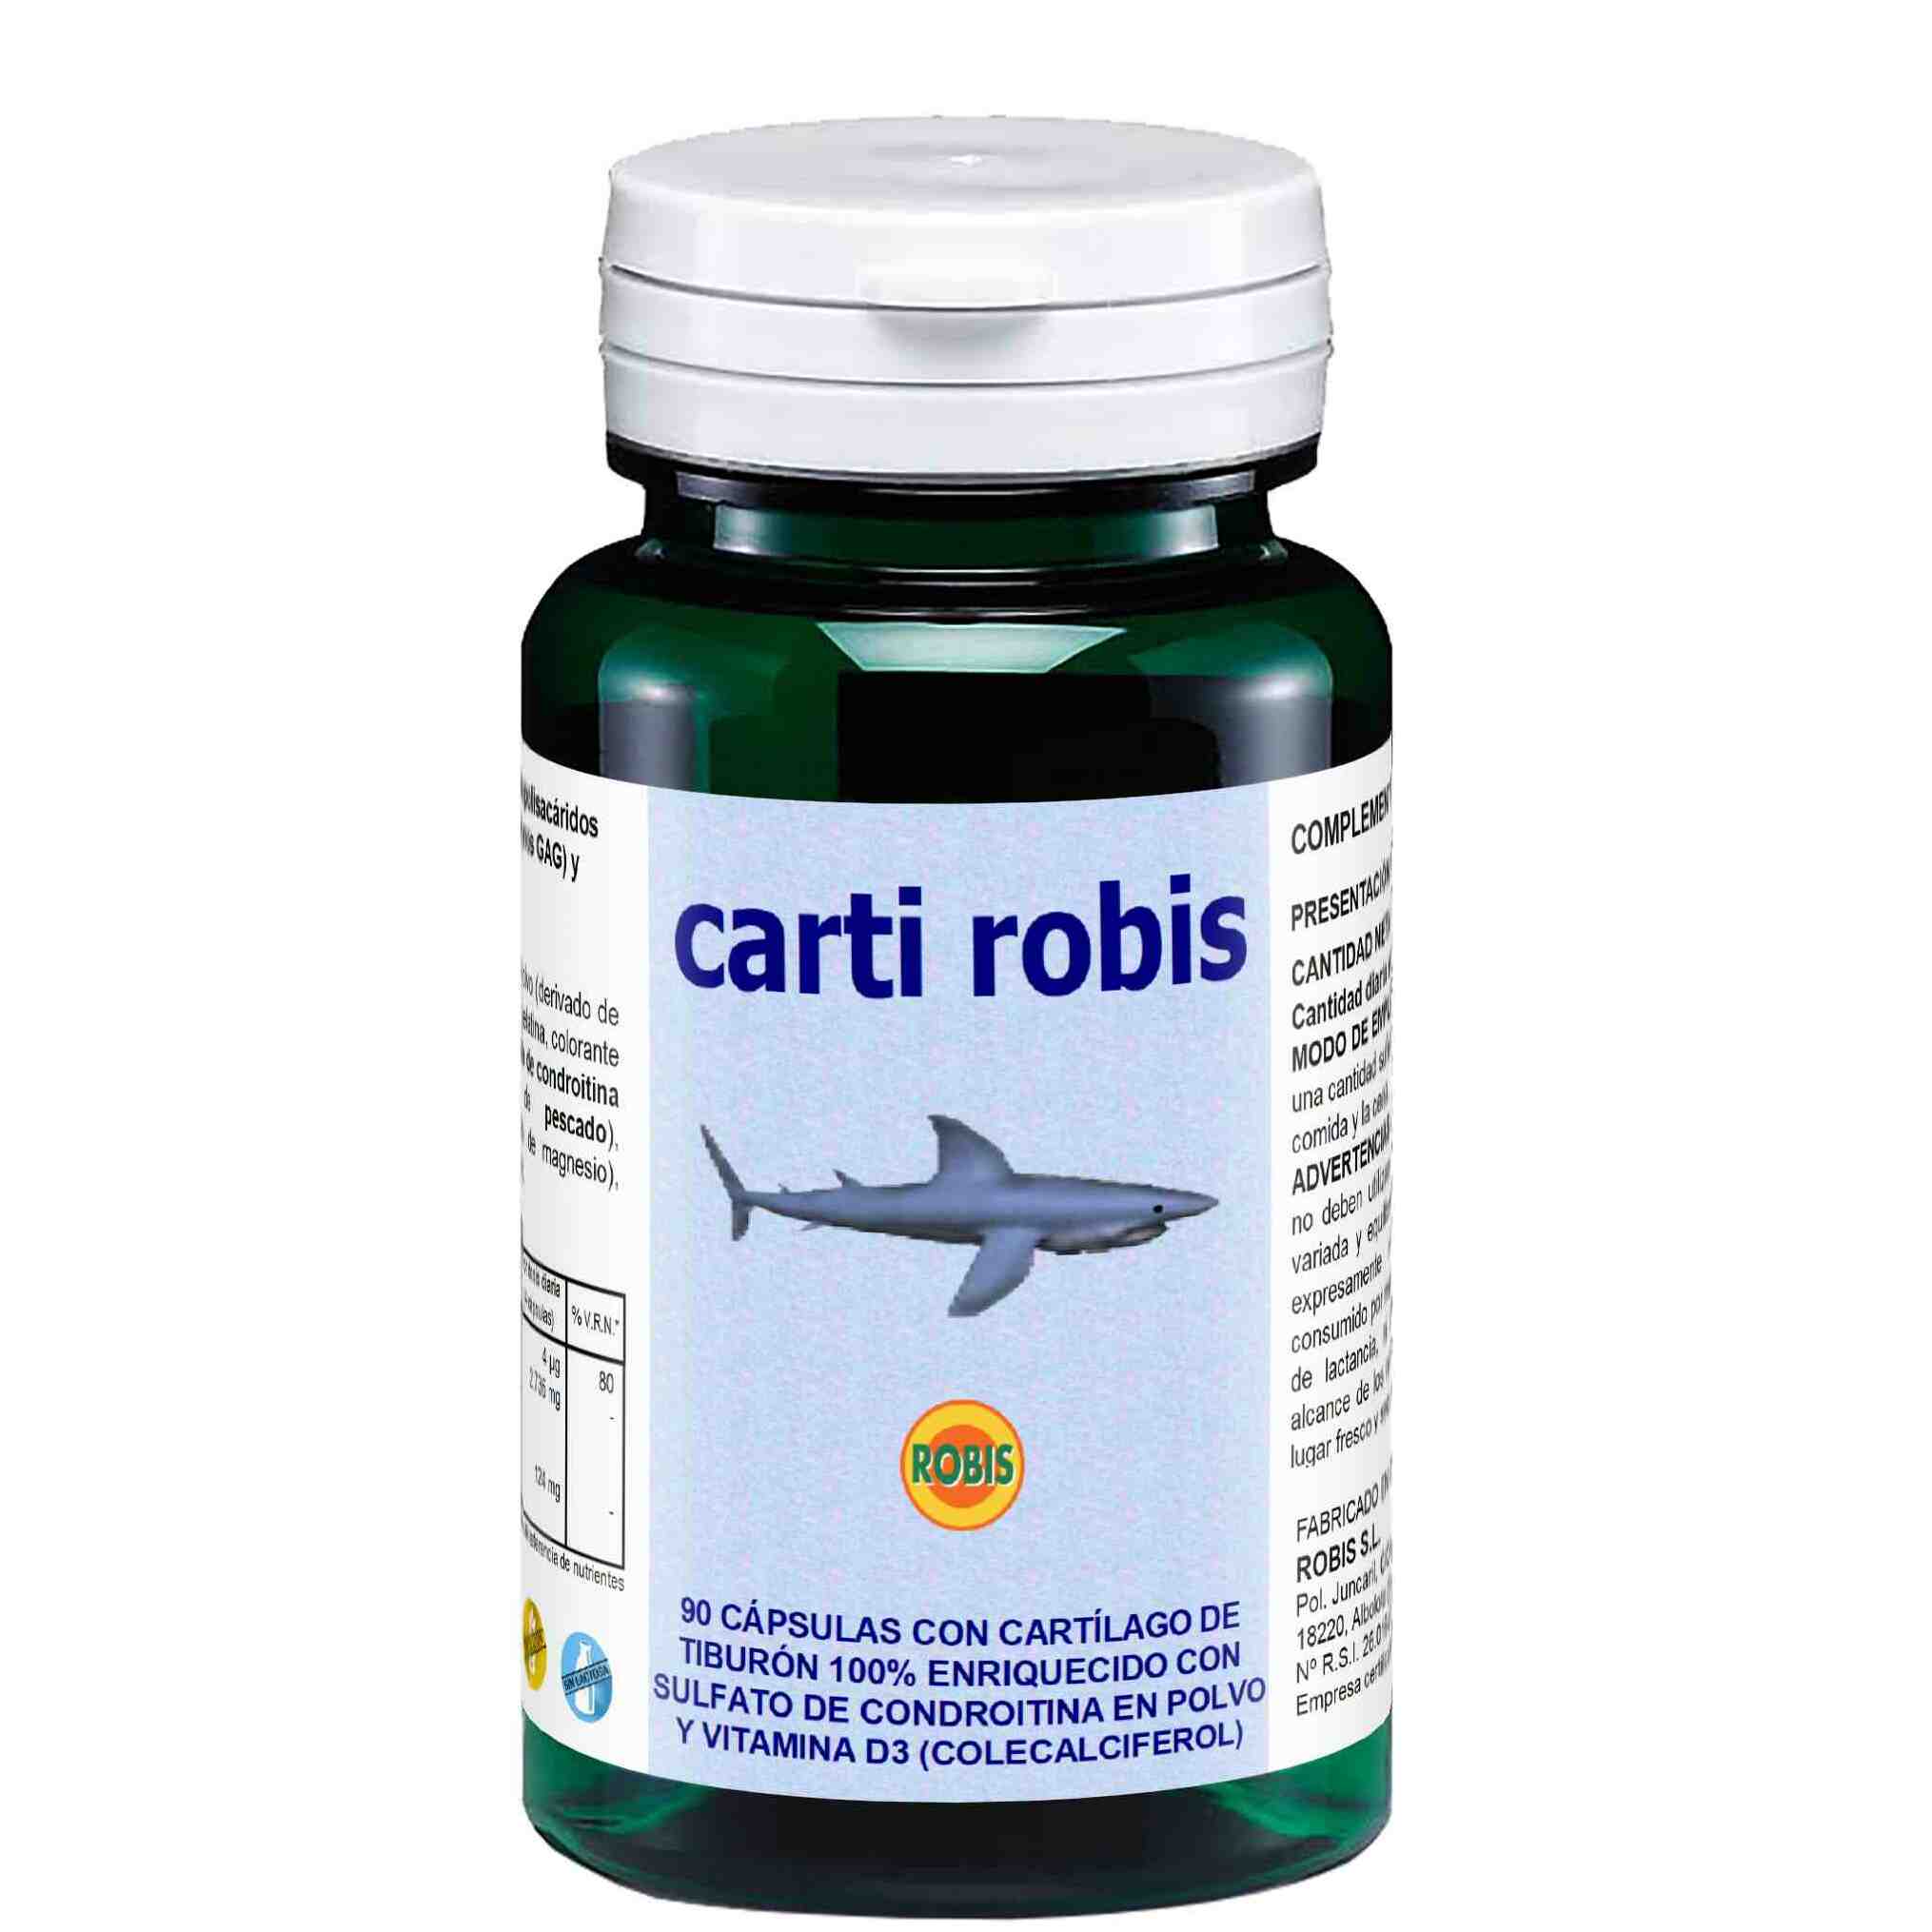 CARTI ROBIS